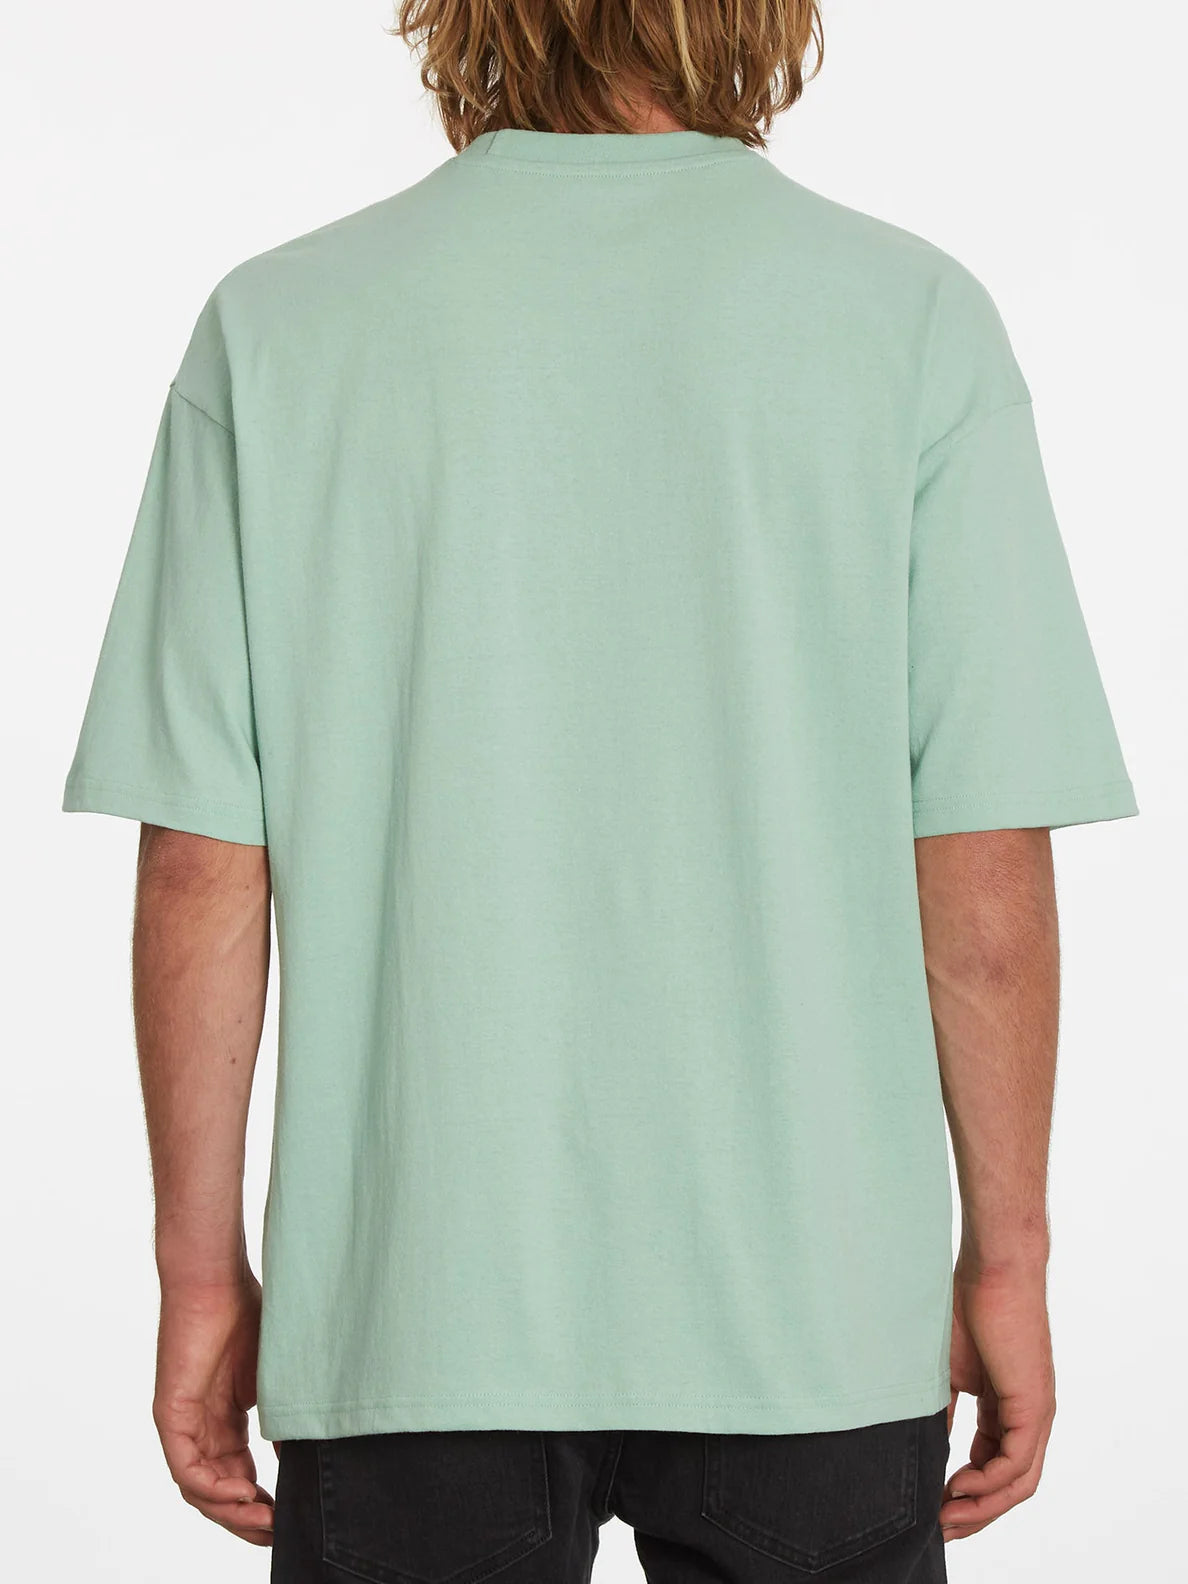 Camiseta Volcom Rippeuro Lichen Green | Camisetas de hombre | Camisetas manga corta de hombre | Volcom Shop | surfdevils.com